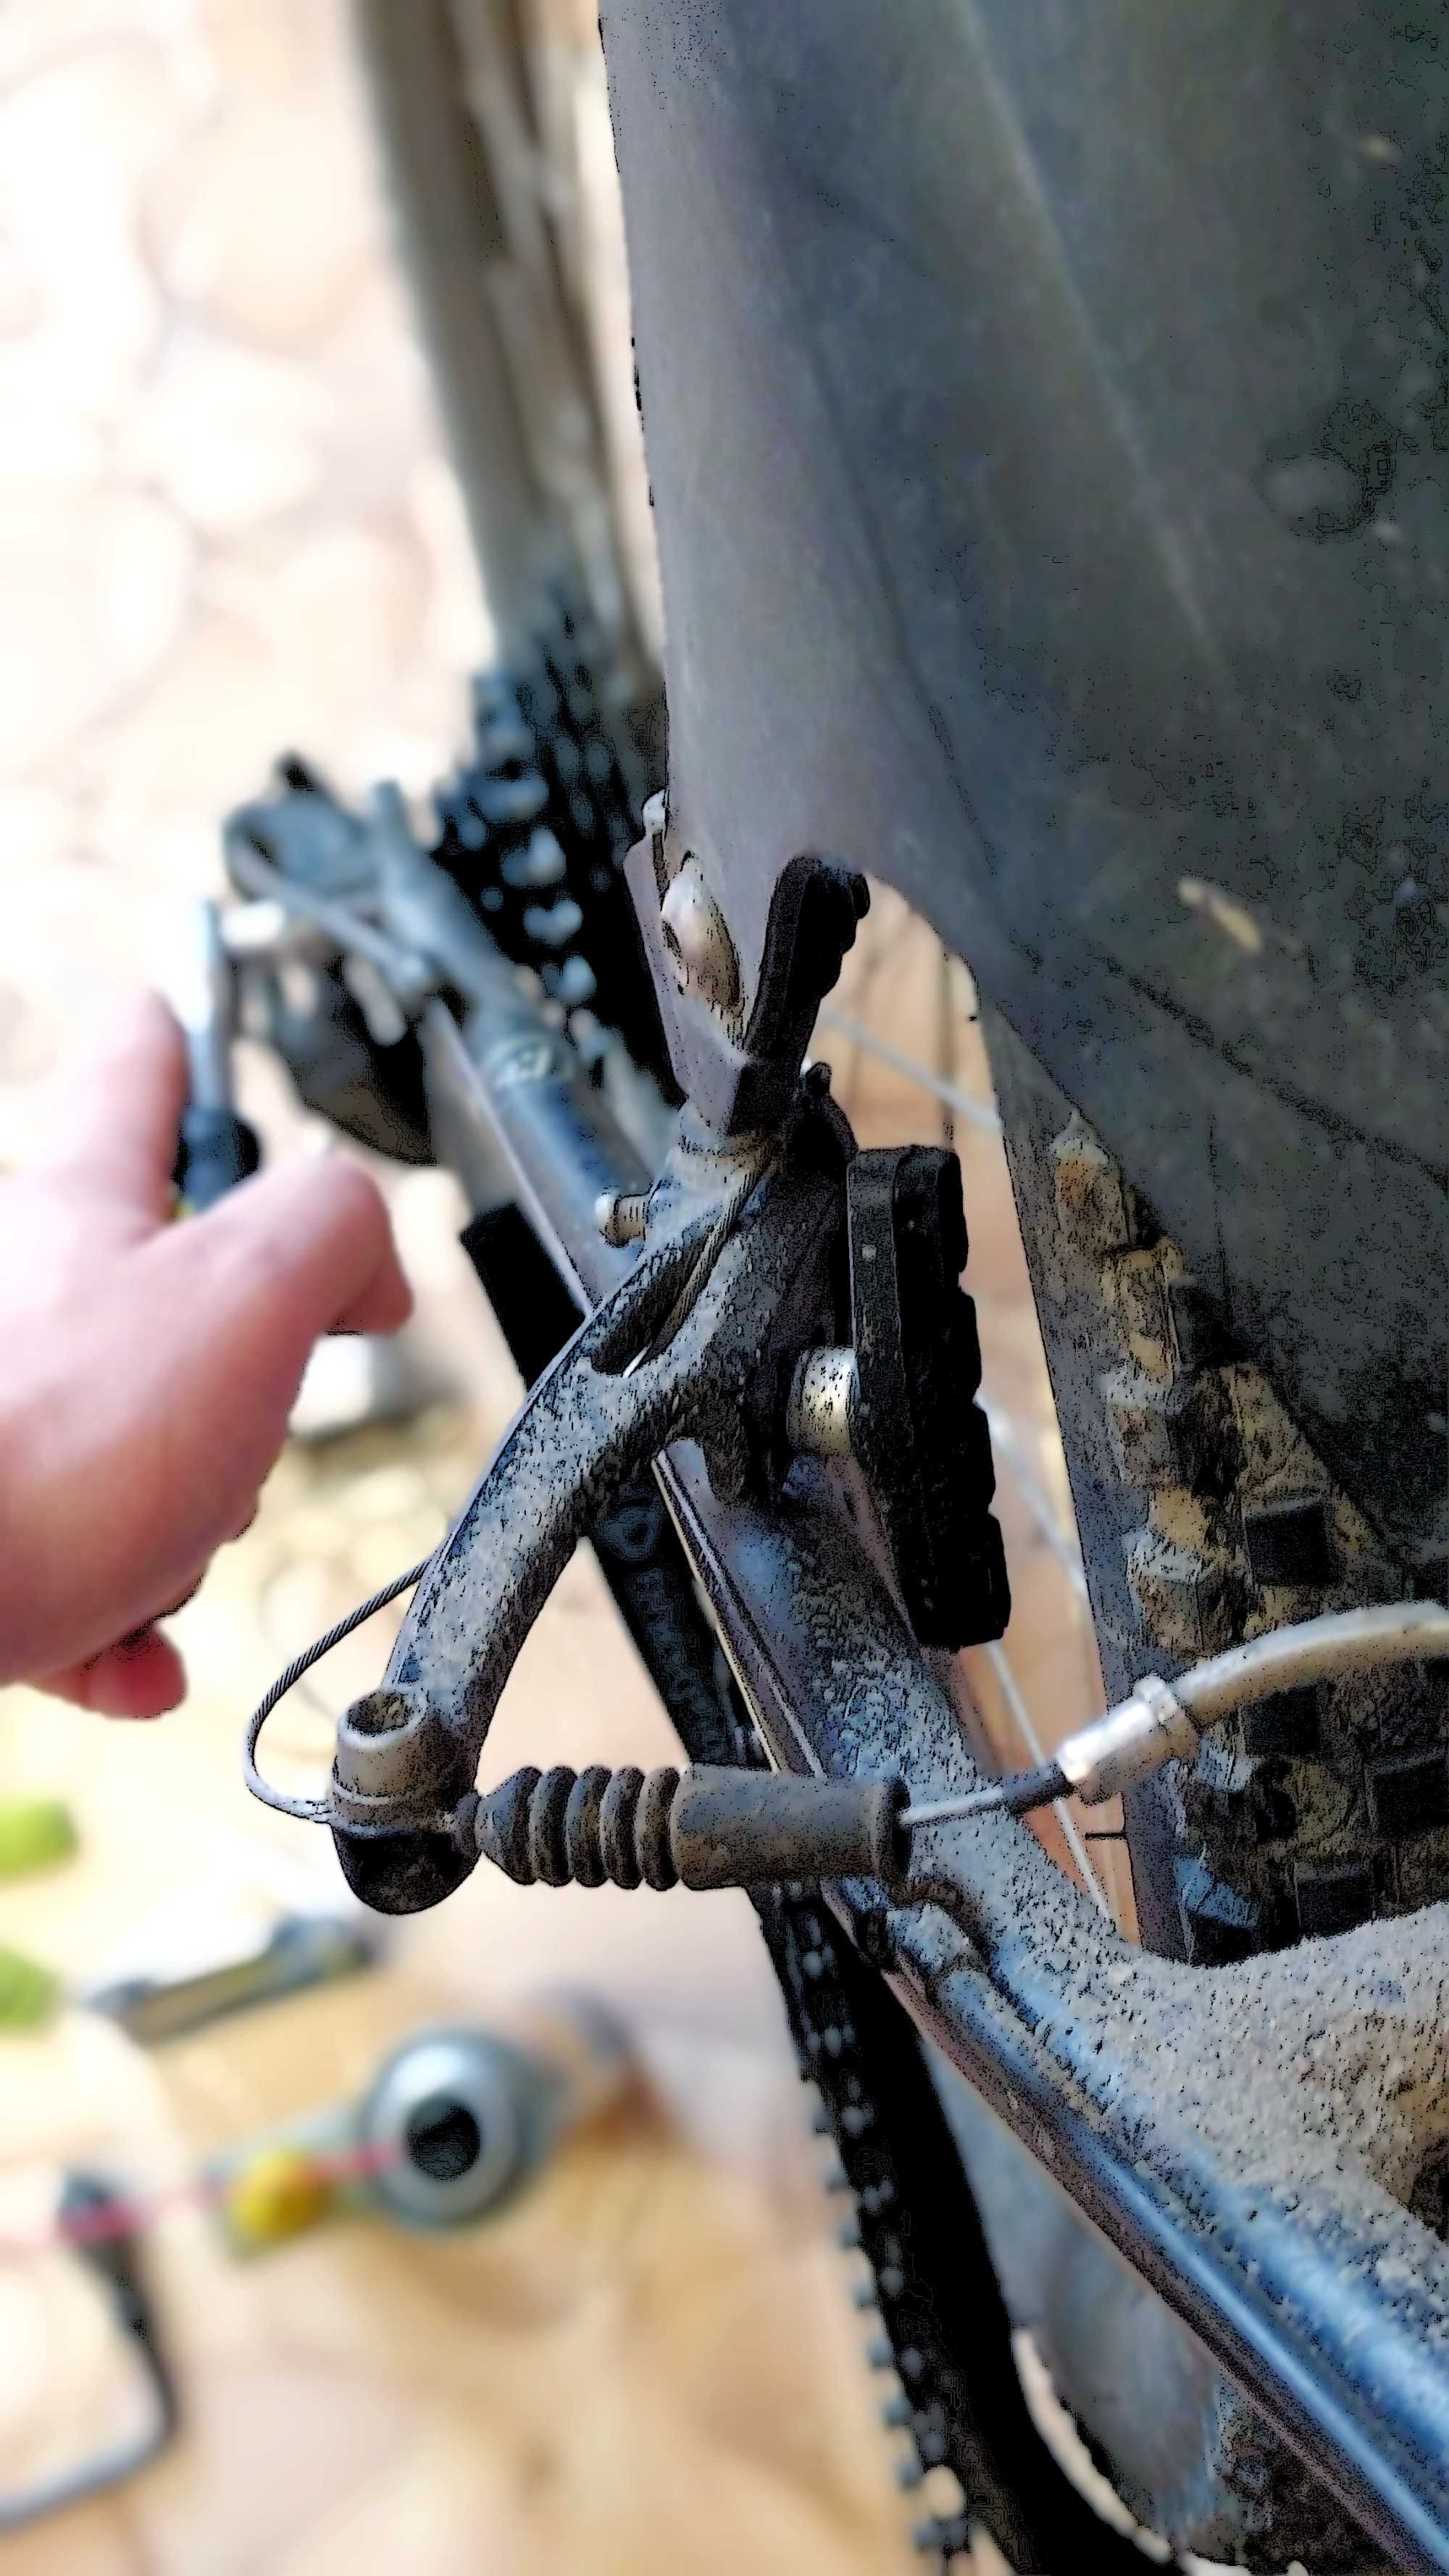 Профессиональный ремонт и настройка велосипедов